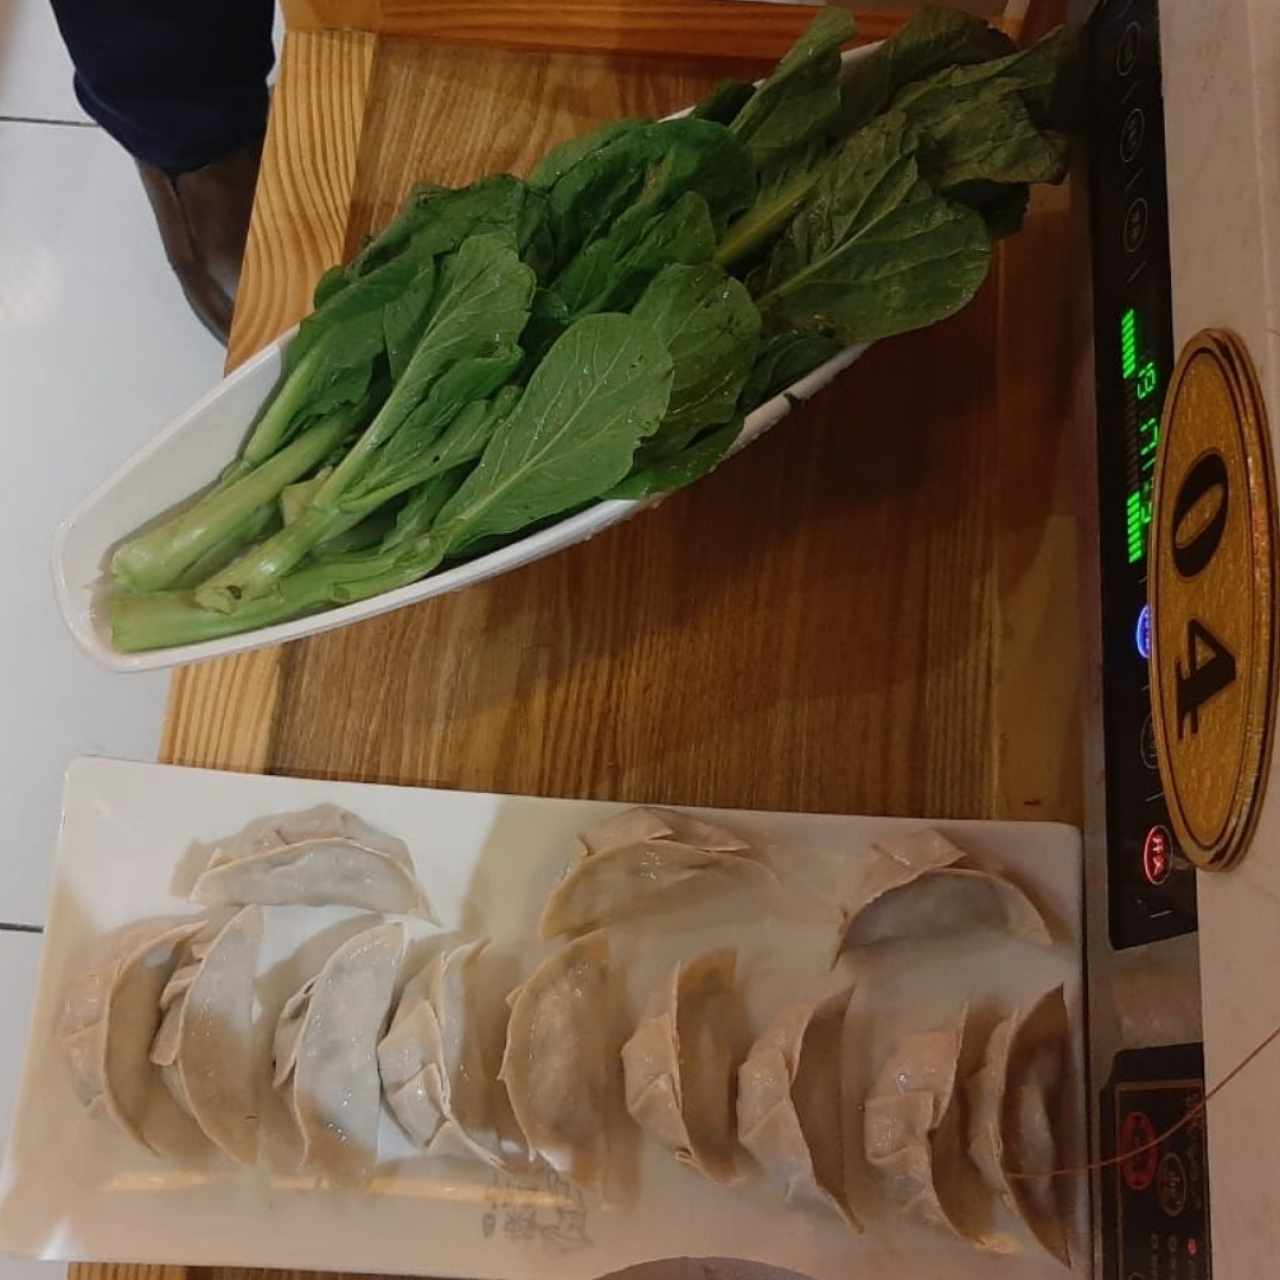 Acompañamientos variados - Dumpling y hojas de mostaza